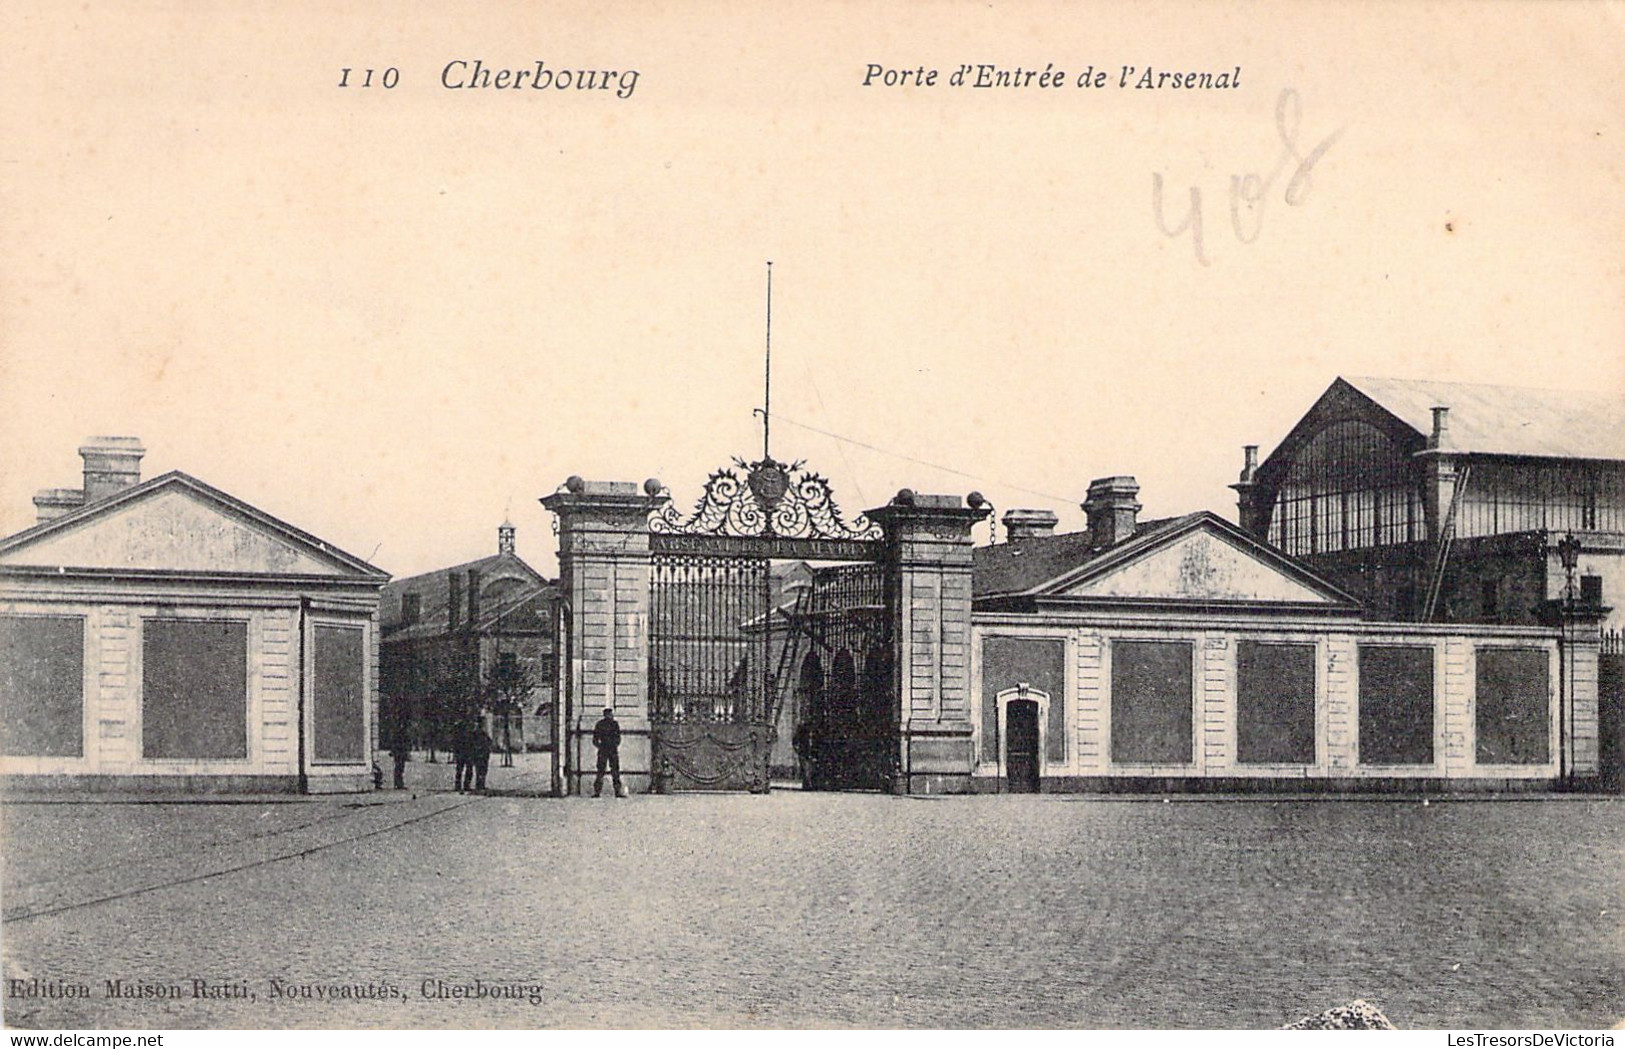 MILITARIA - CHERBOURG - Porte D'entrée De L'Arsenal - Edition Maison Ratti - Carte Postale Ancienne - Barracks